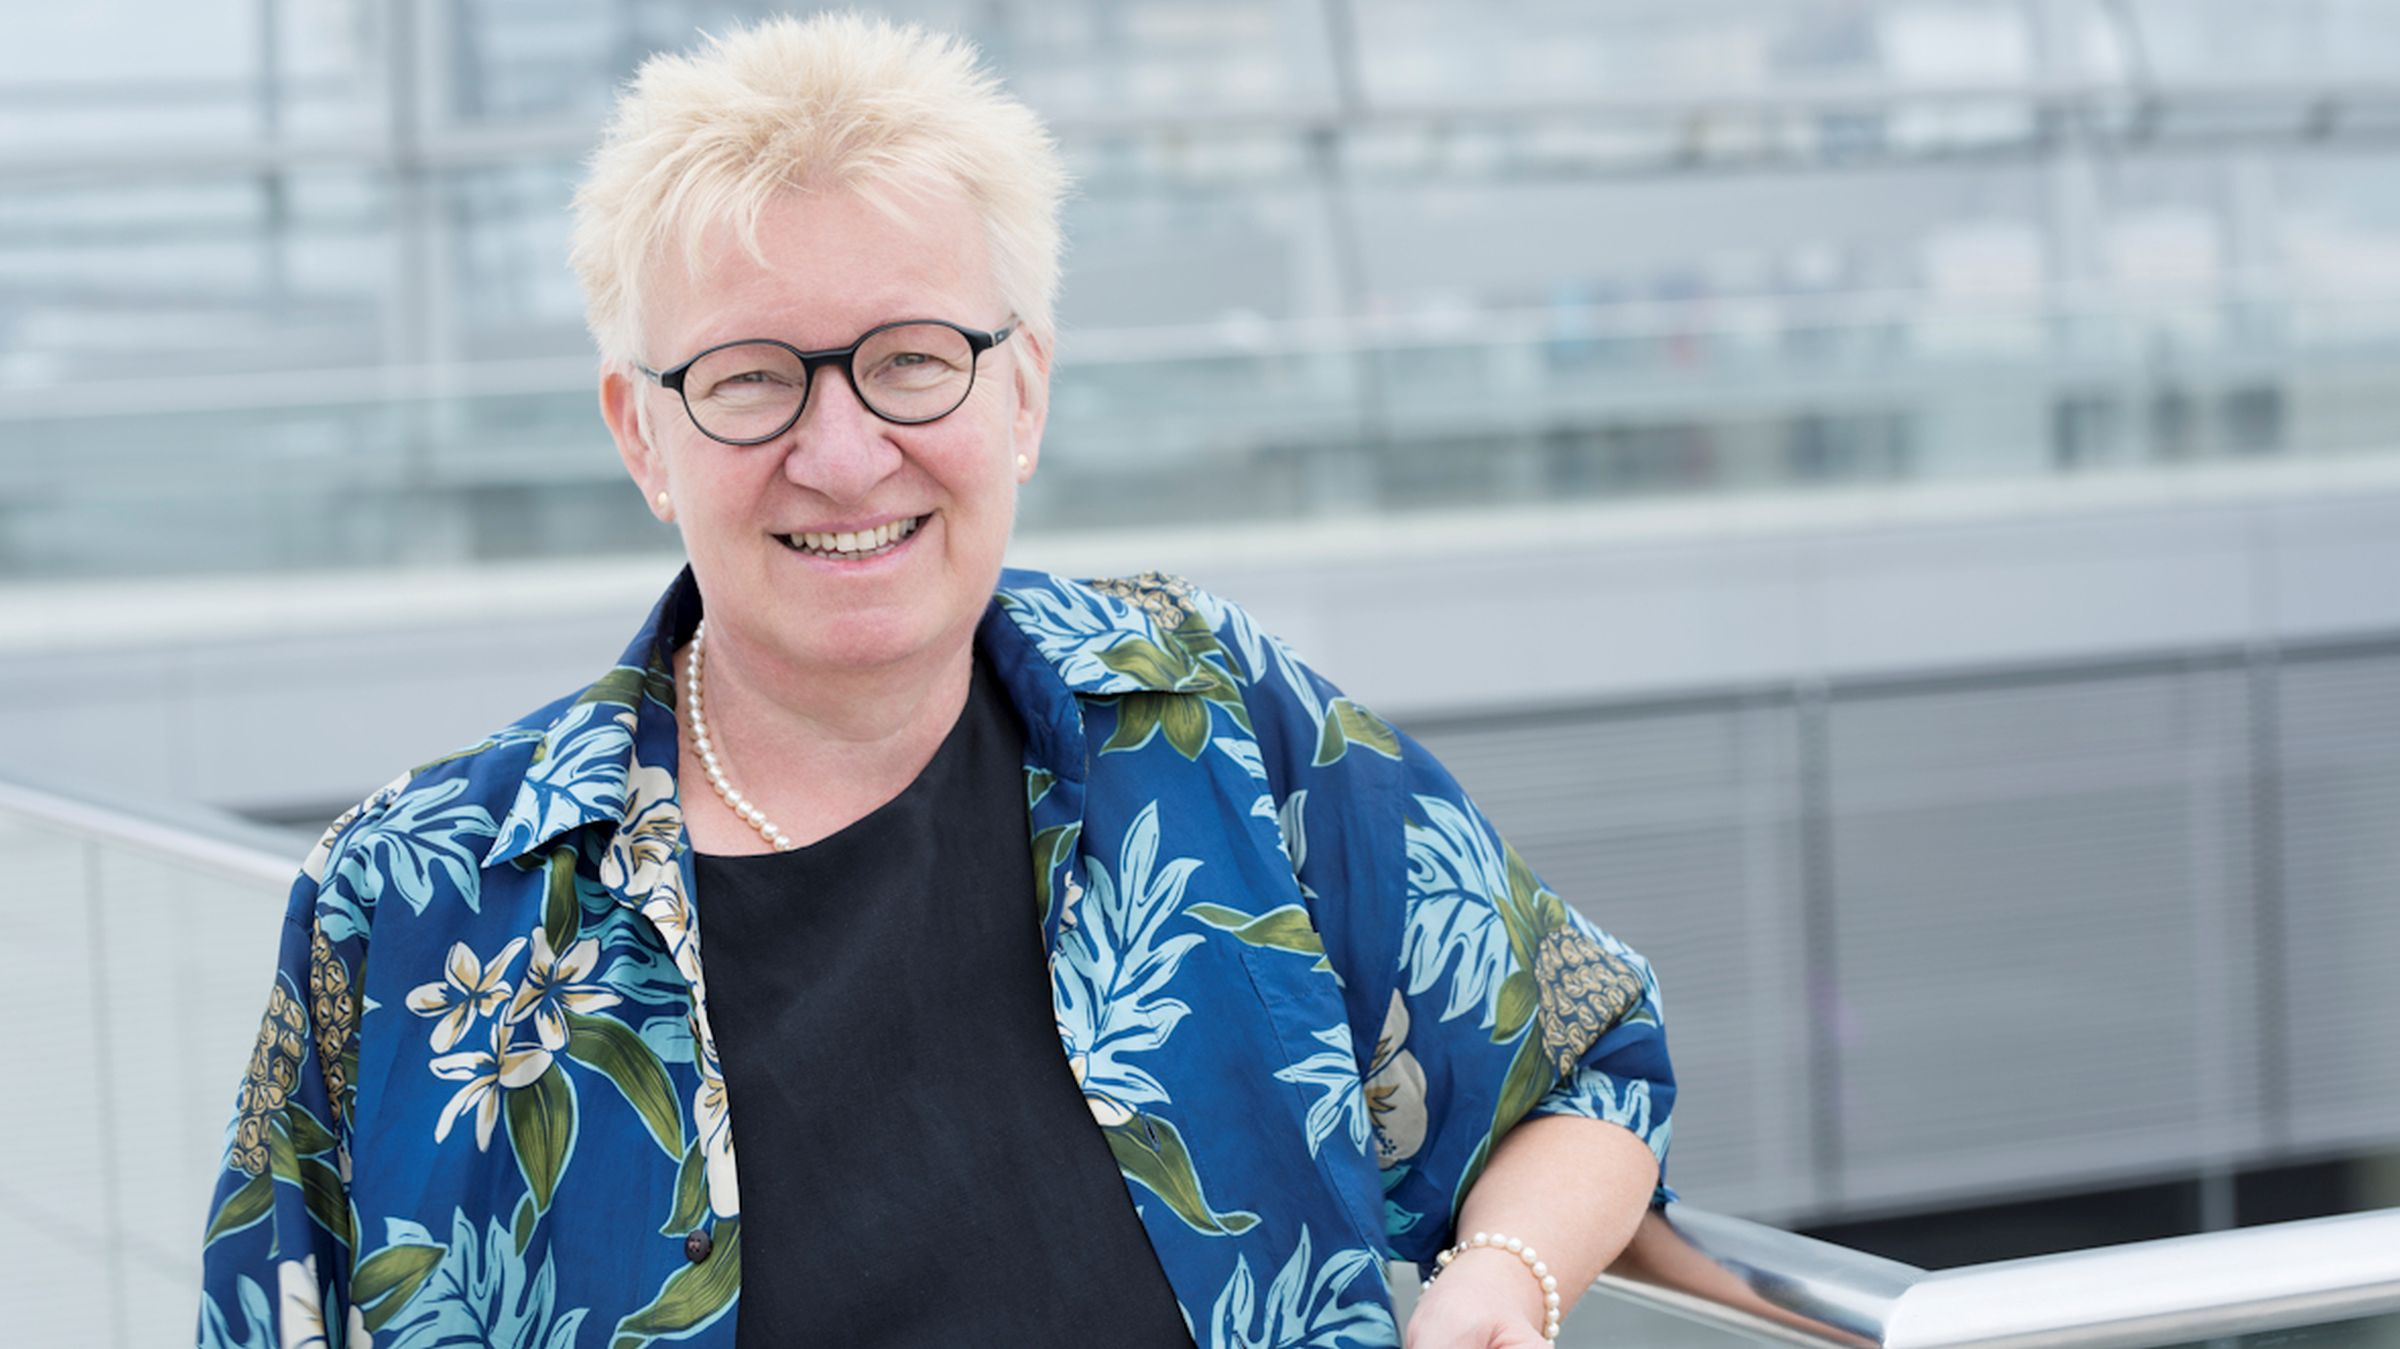 Jutta Krellmann, Sprecherin für Mitbestimmung und Arbeit derFraktion DIE LINKE im Bundestag